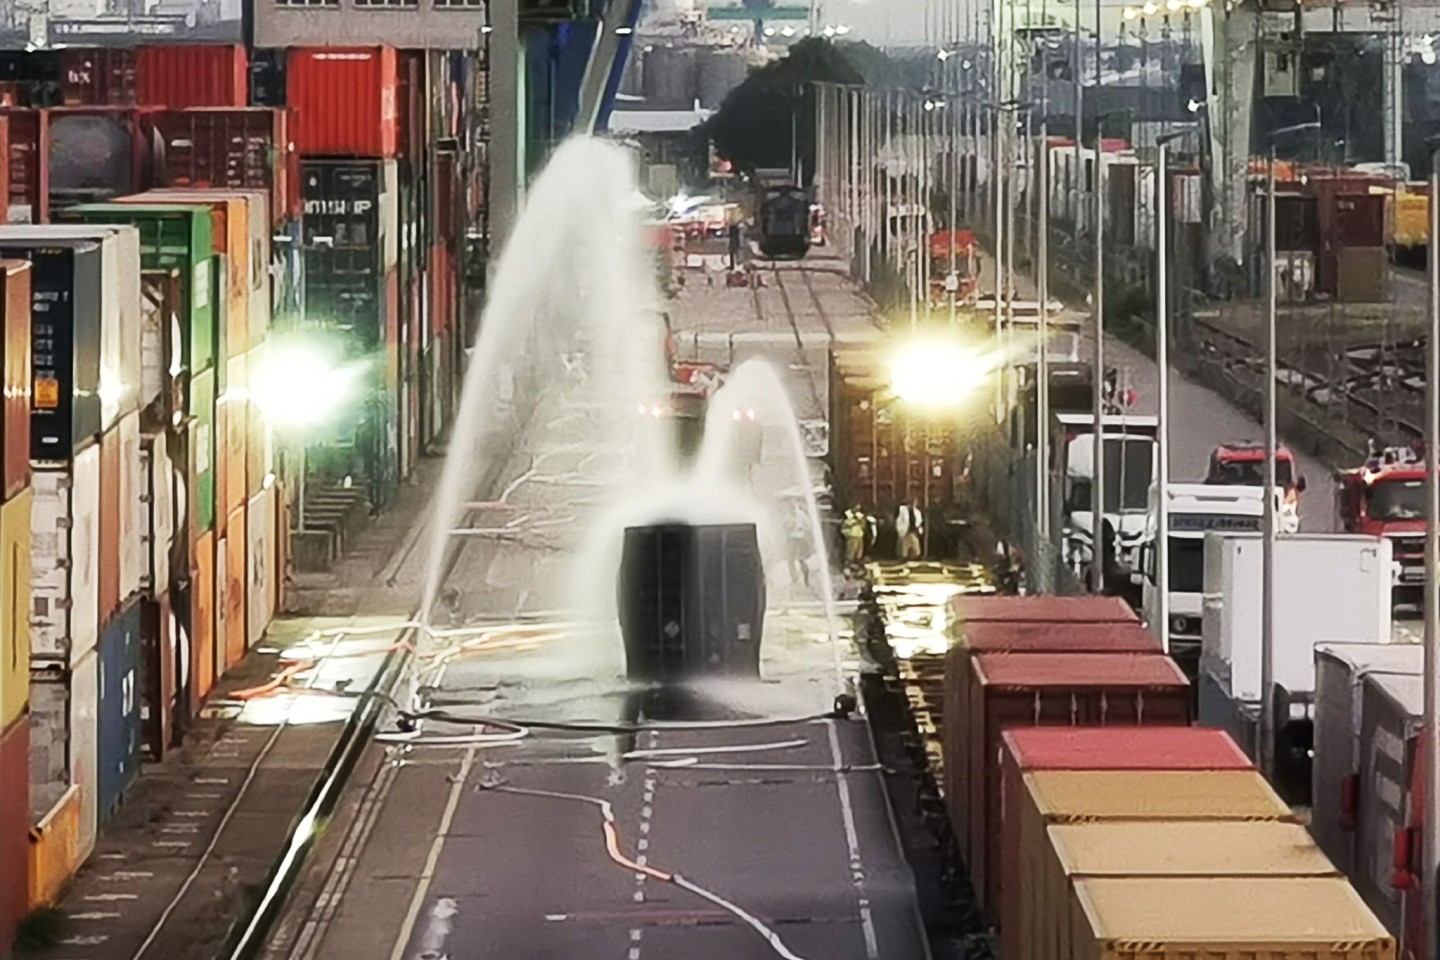 Die Feuerwehr kühlt einen Container, der mit 200 Fässern Hydrosulfit gefüllt ist, nach einem Chemieunfall.